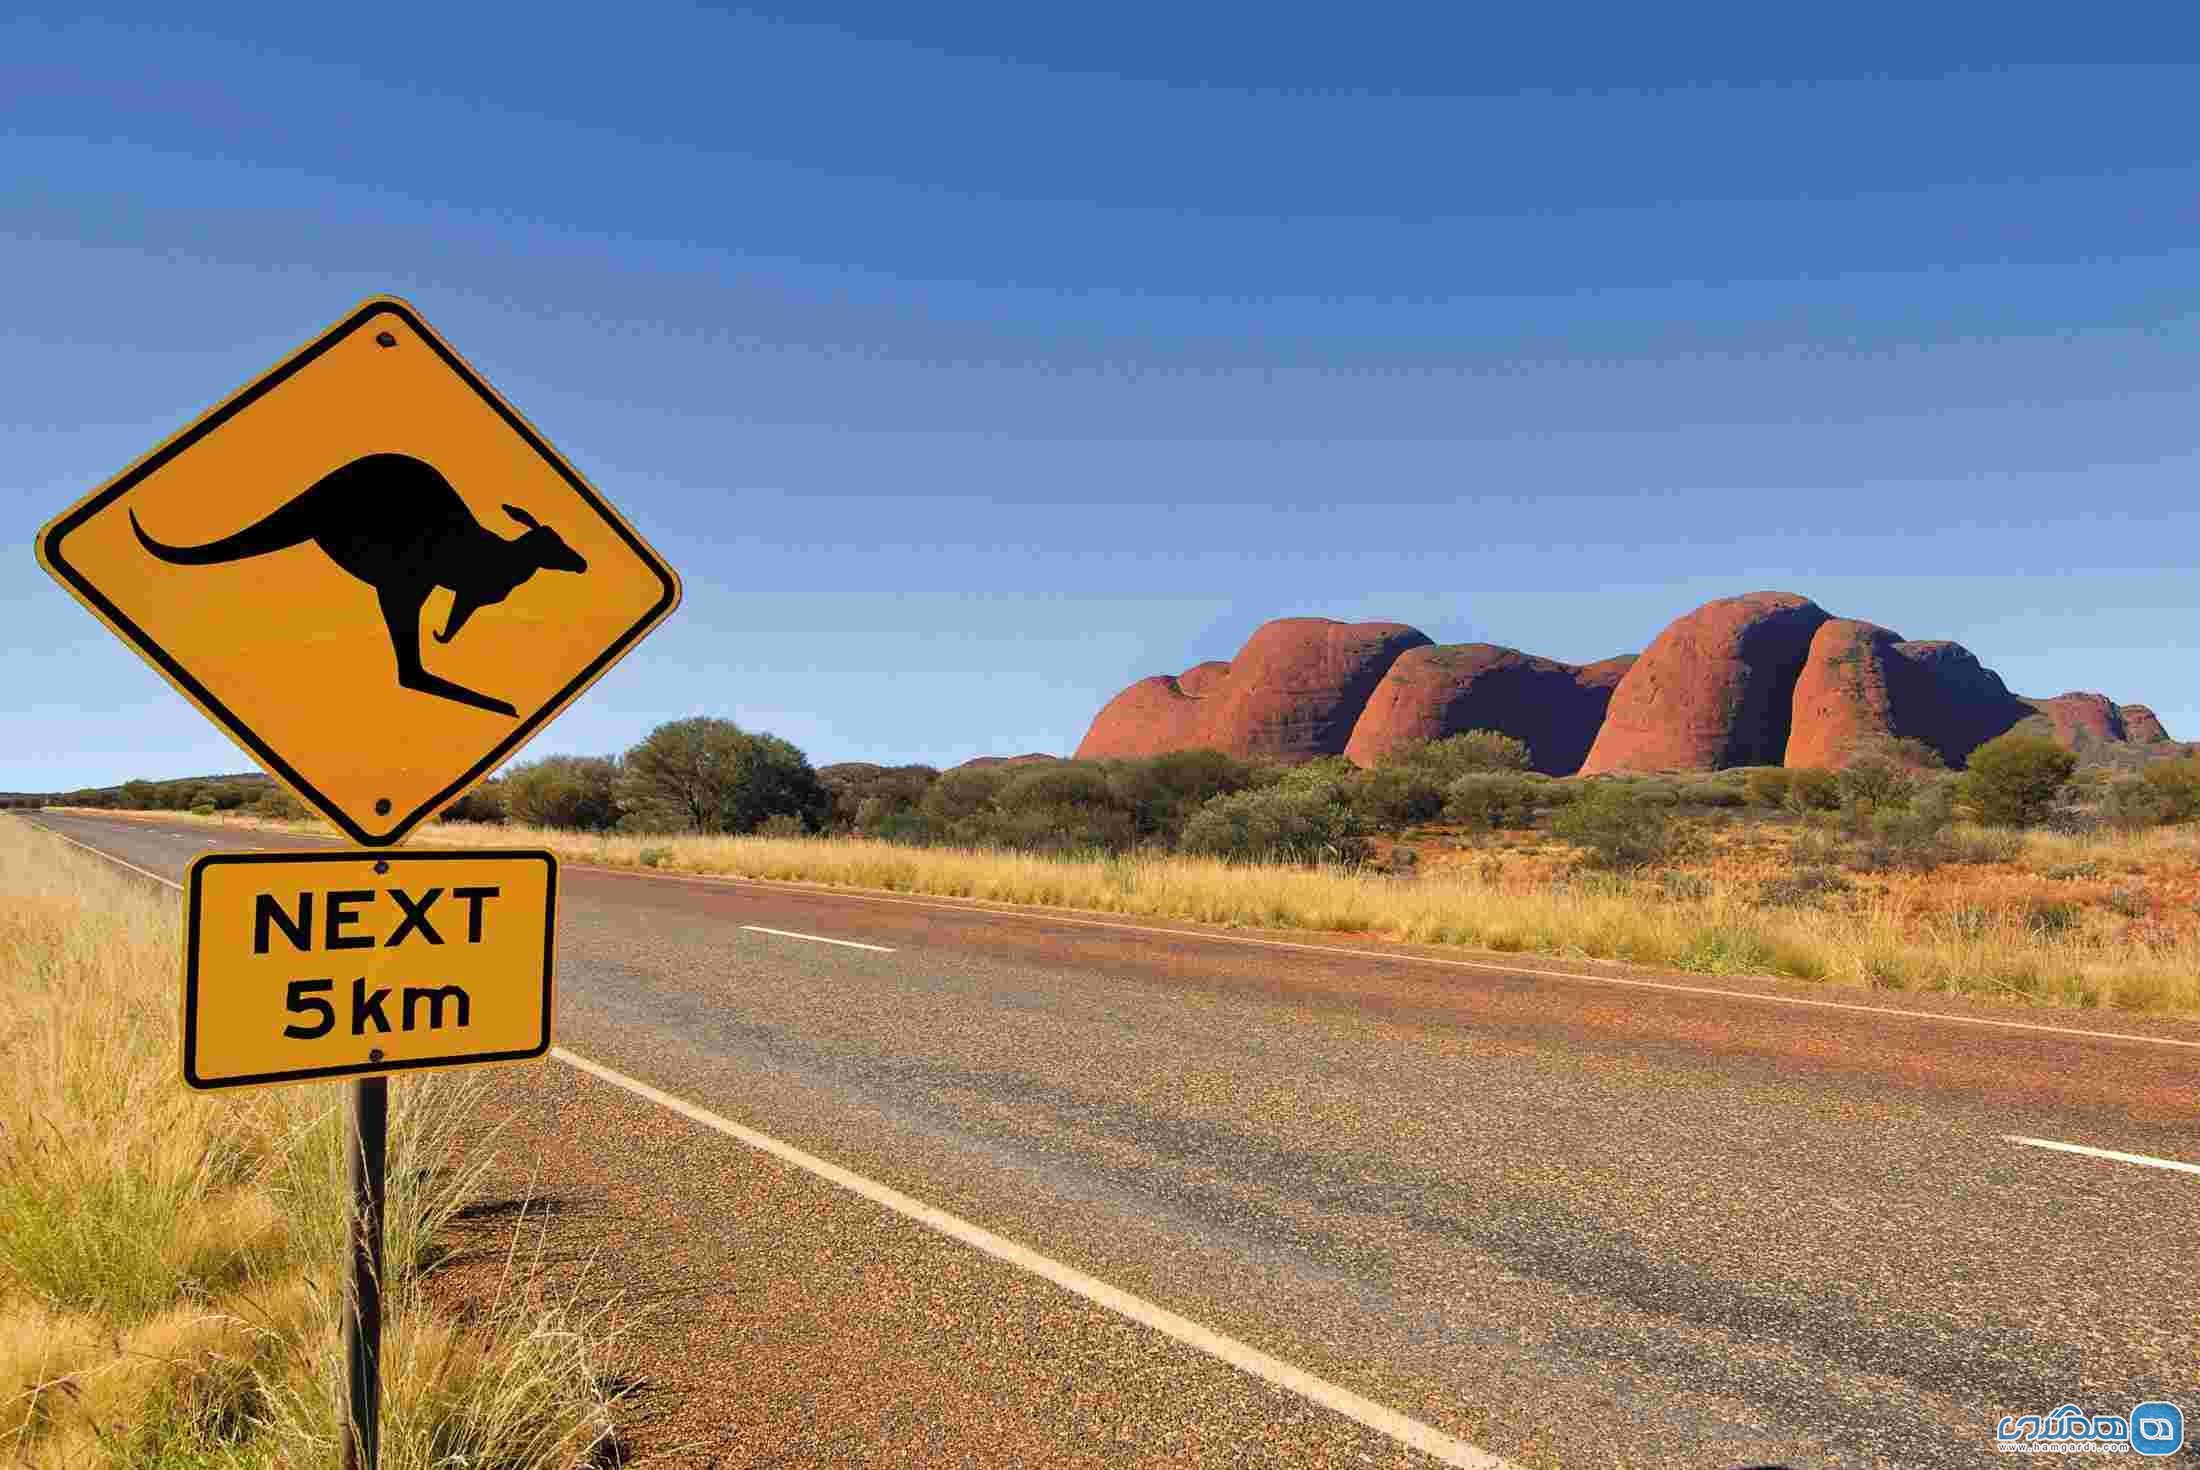 داستان عجیب وجود شتر های وحشی در استرالیا: منطقه آوت بک